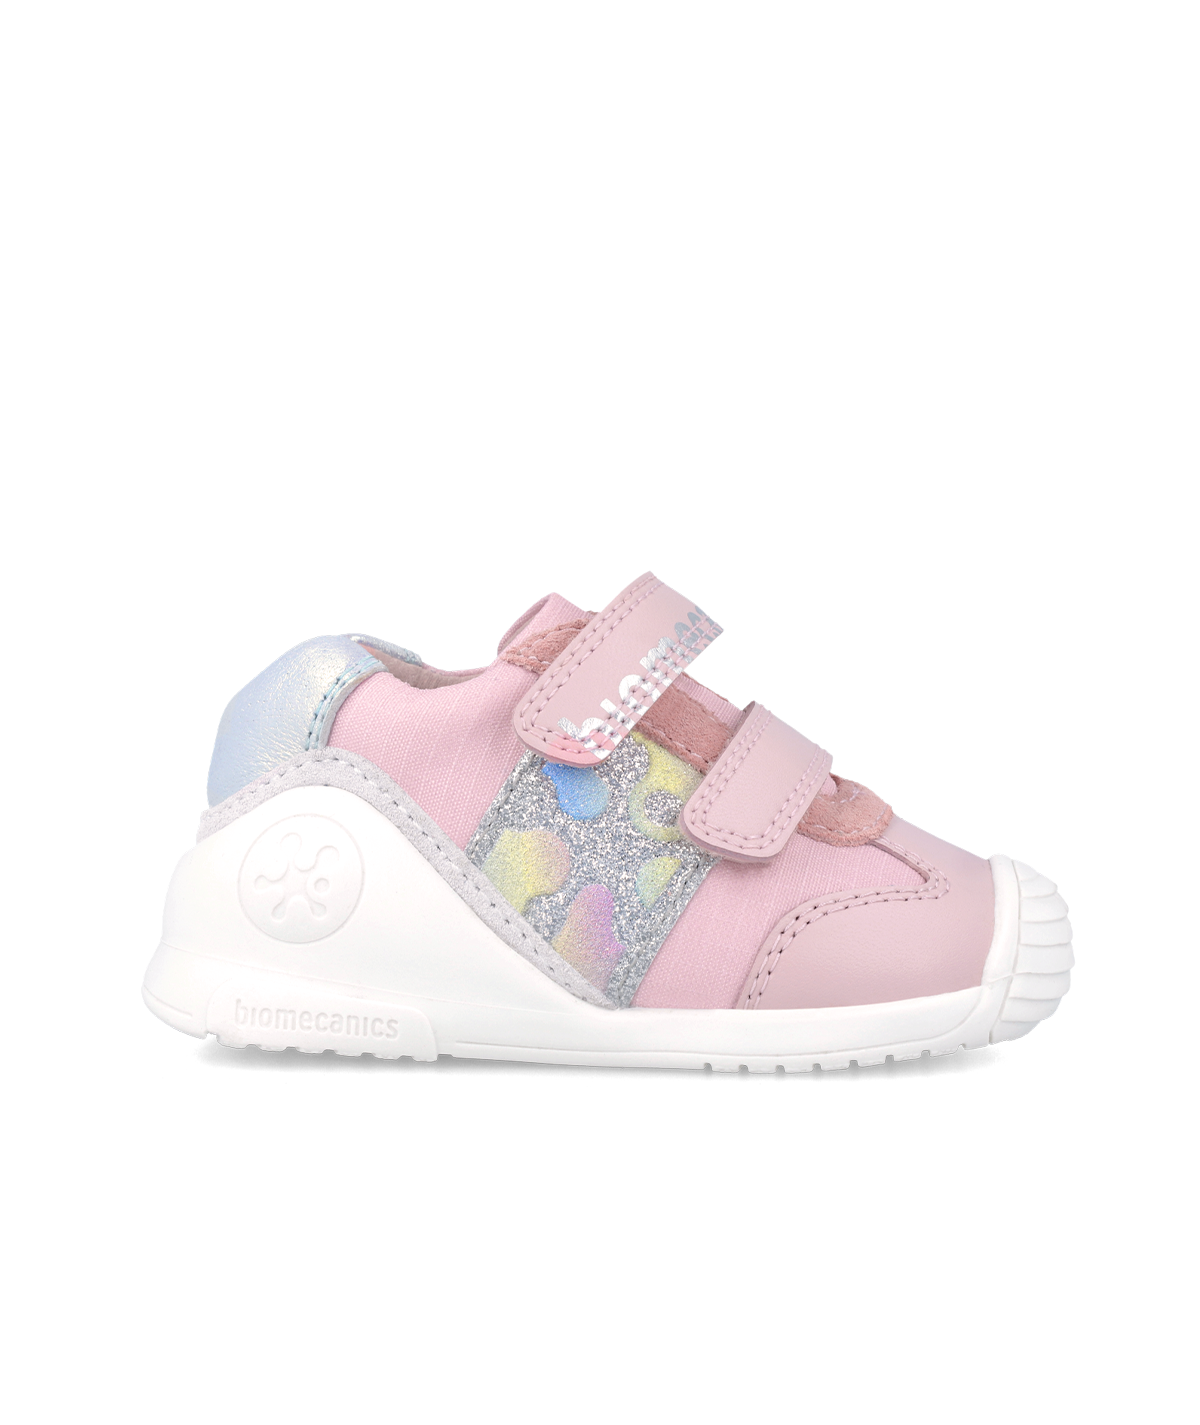 Sneakers haut rose bébé